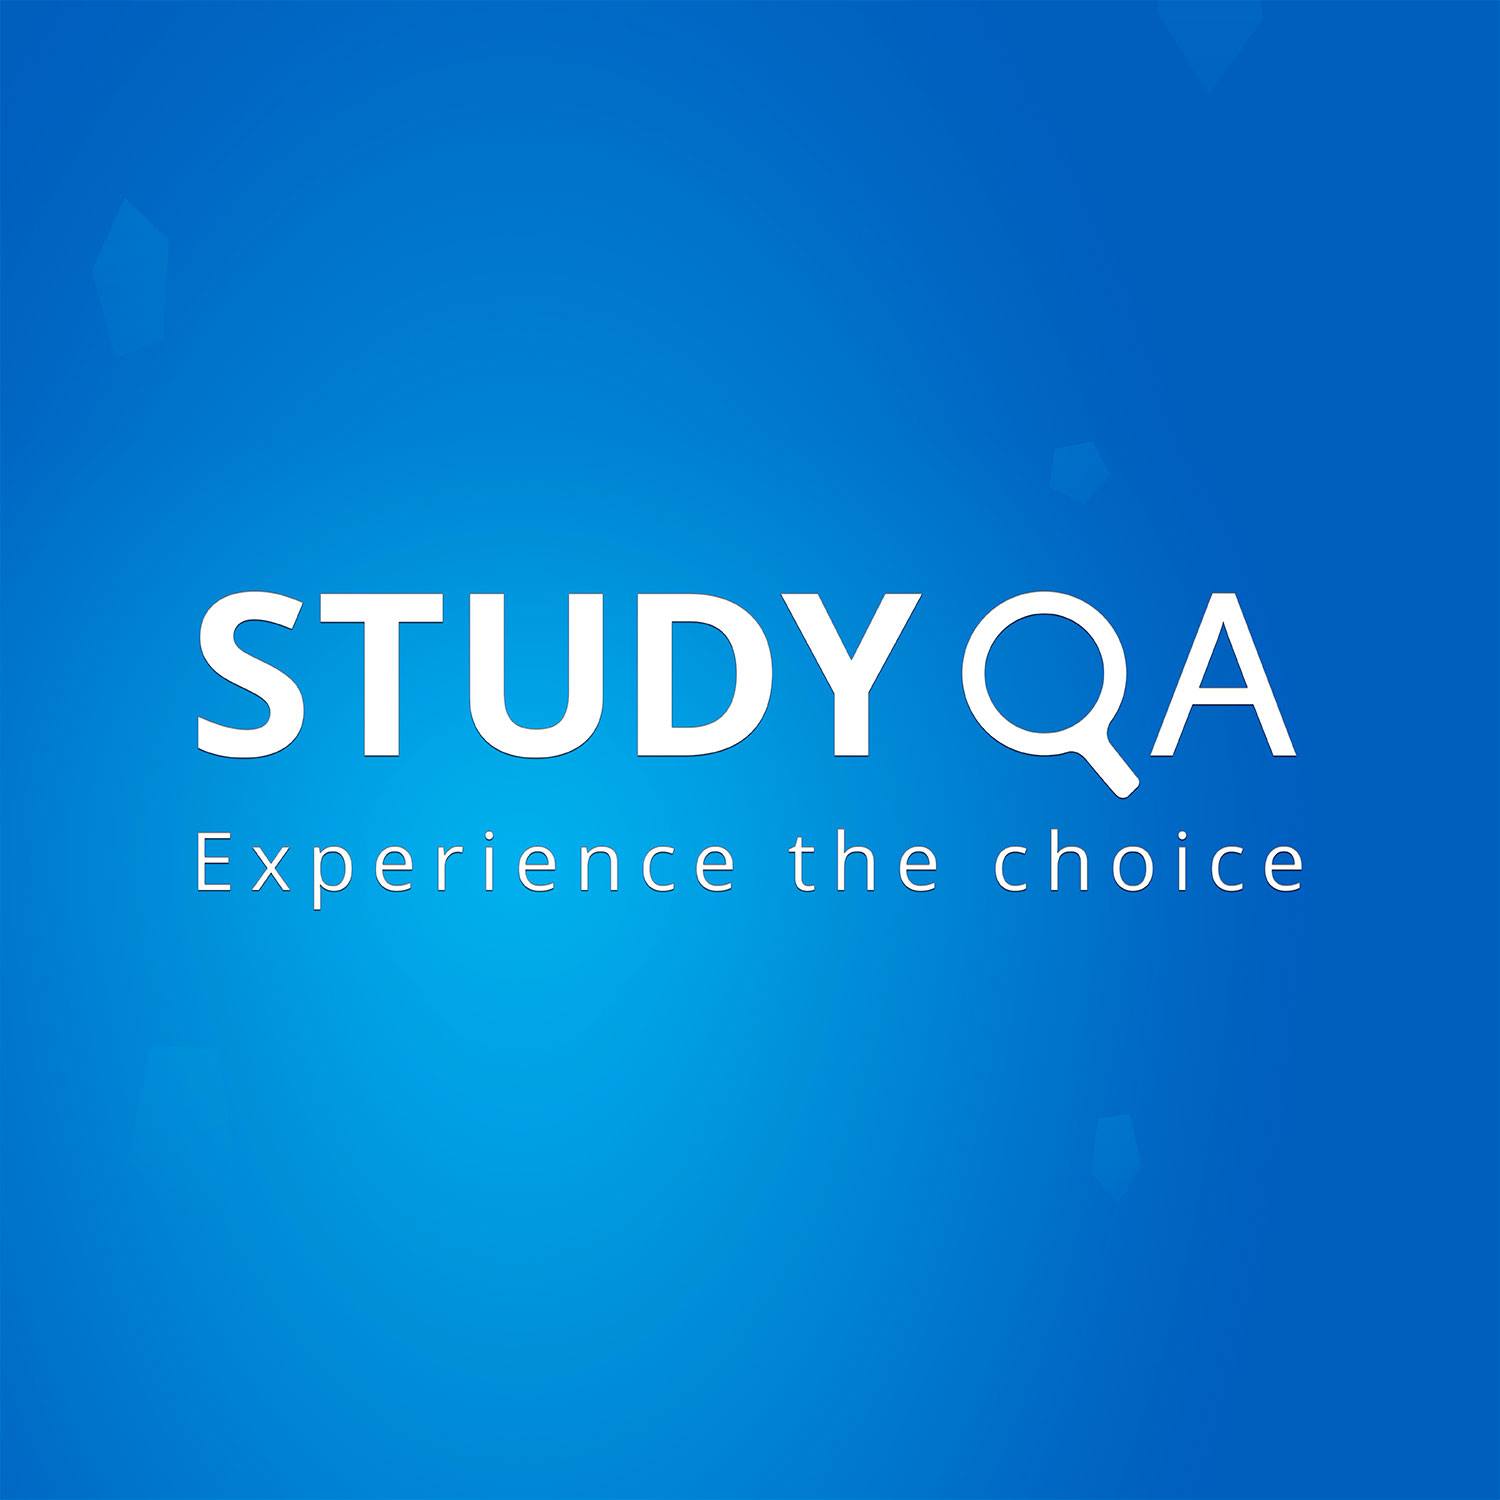 STUDY QA